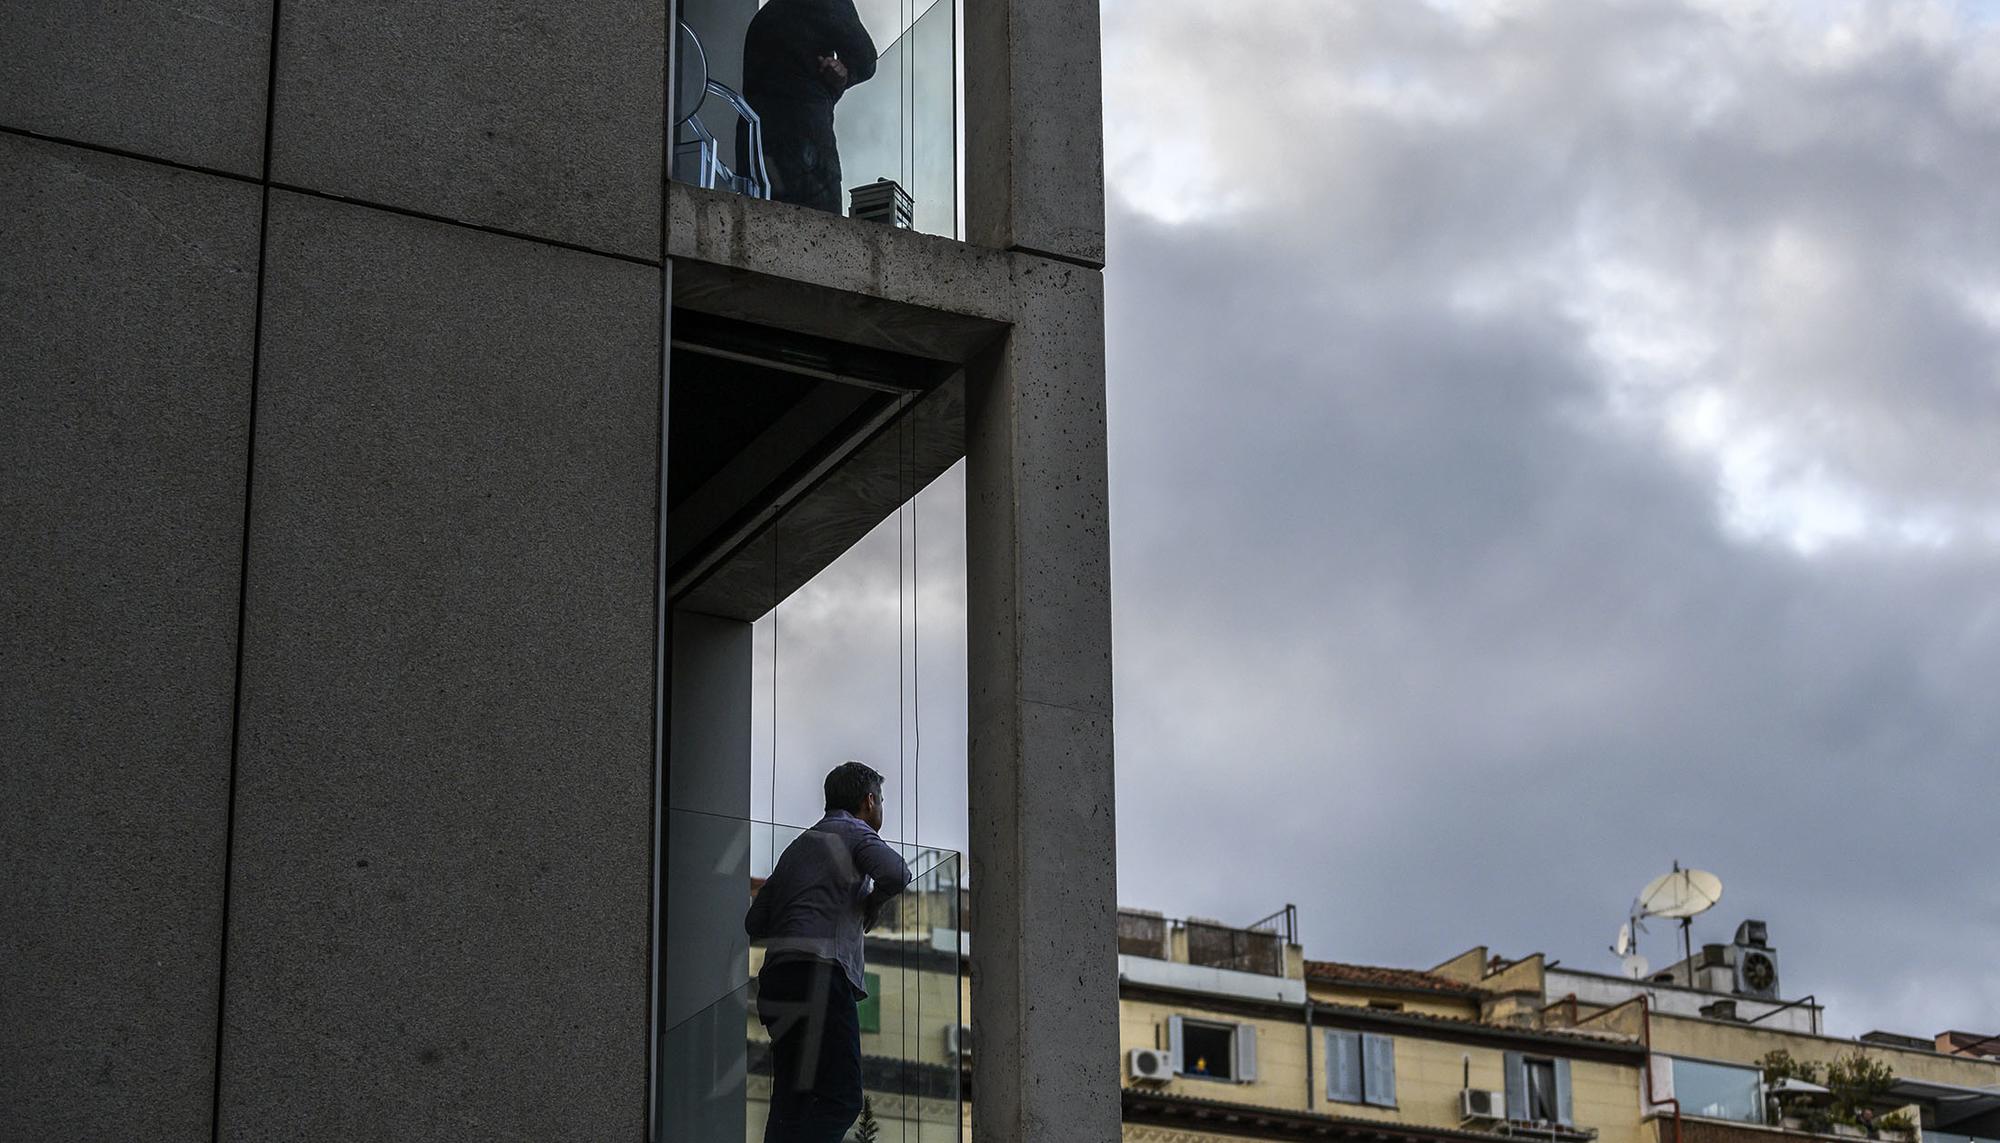 Gente asomada a los balcones Chueca